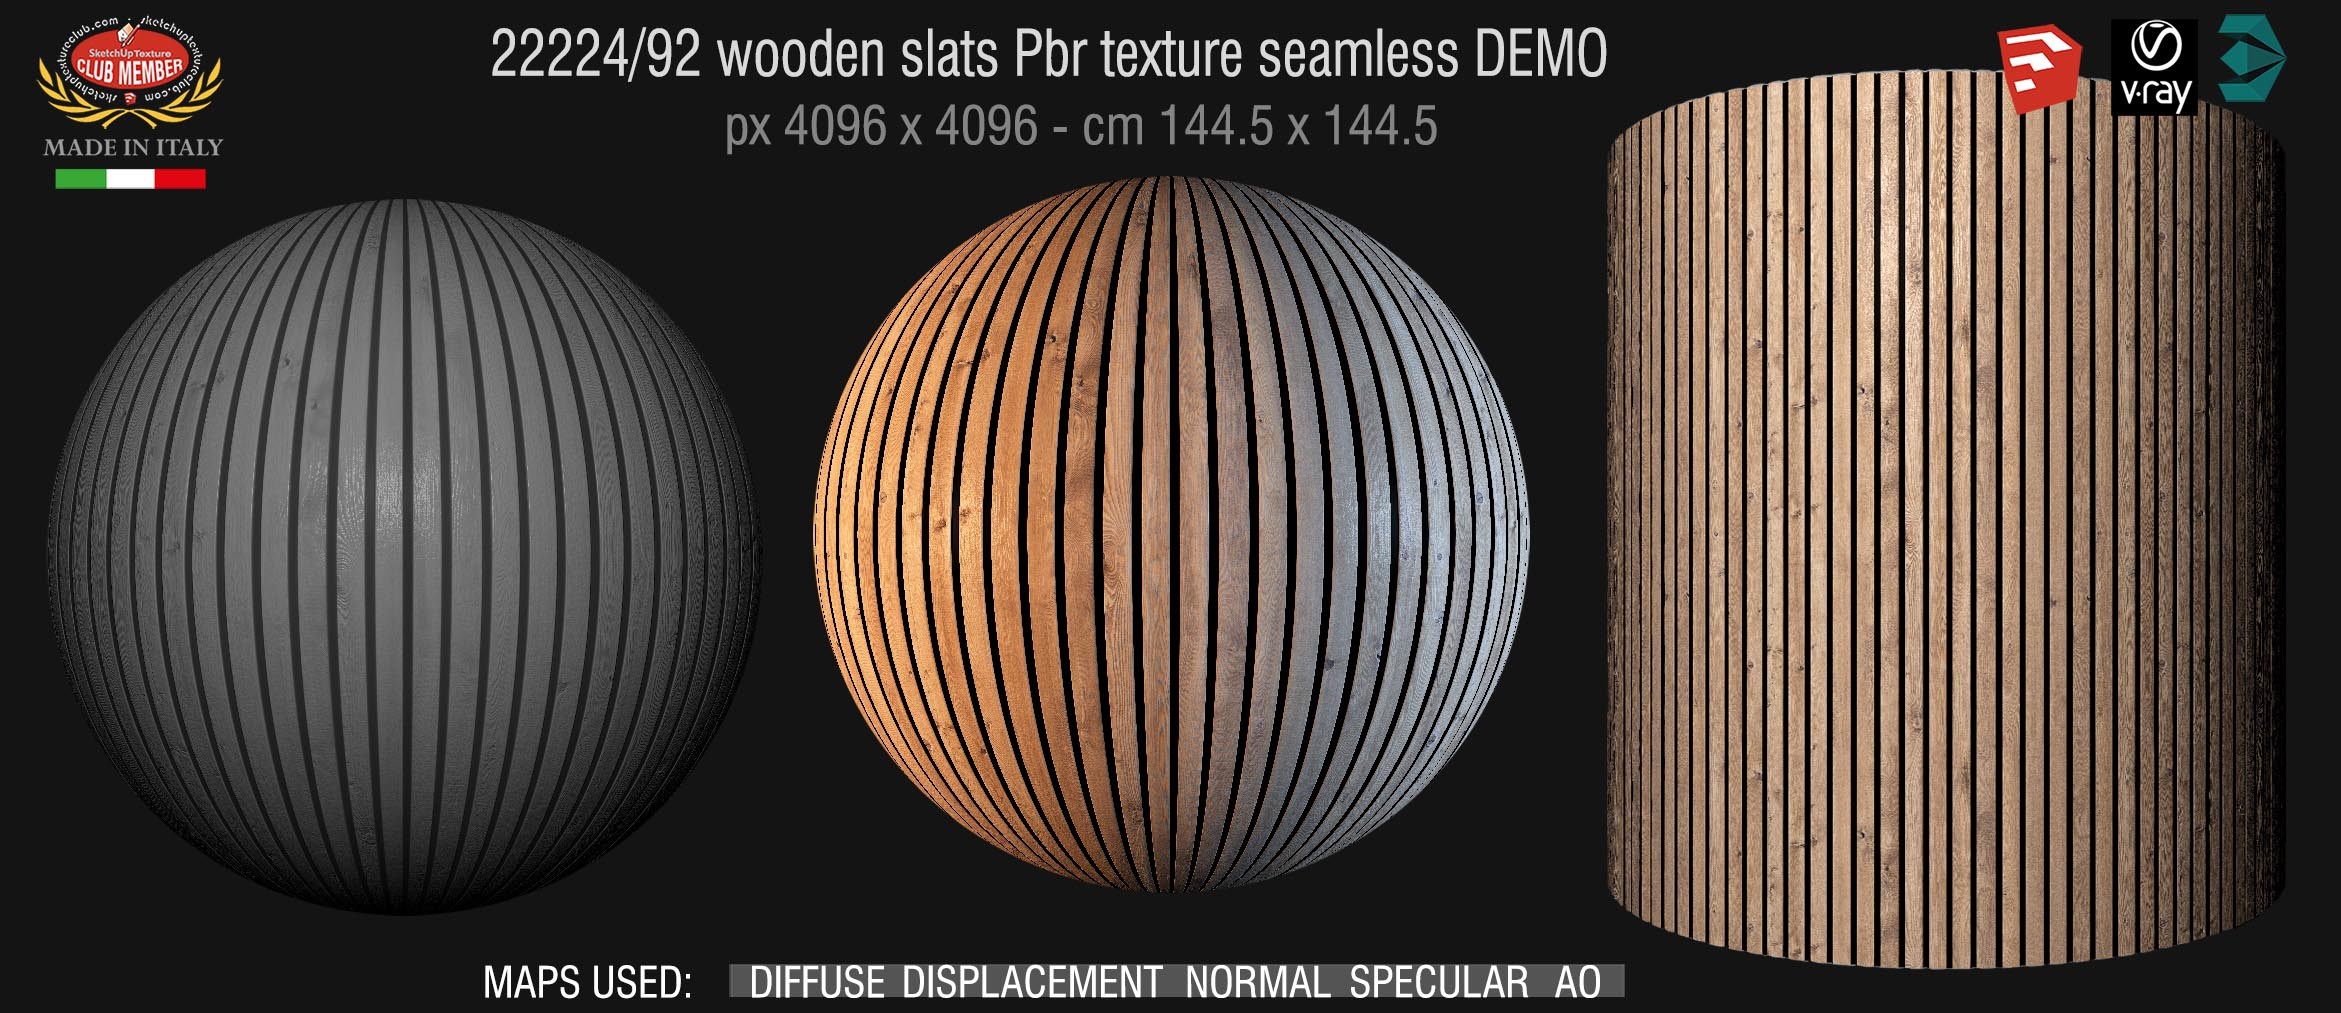 22224_92 wooden slats Pbr texture seamless DEMO